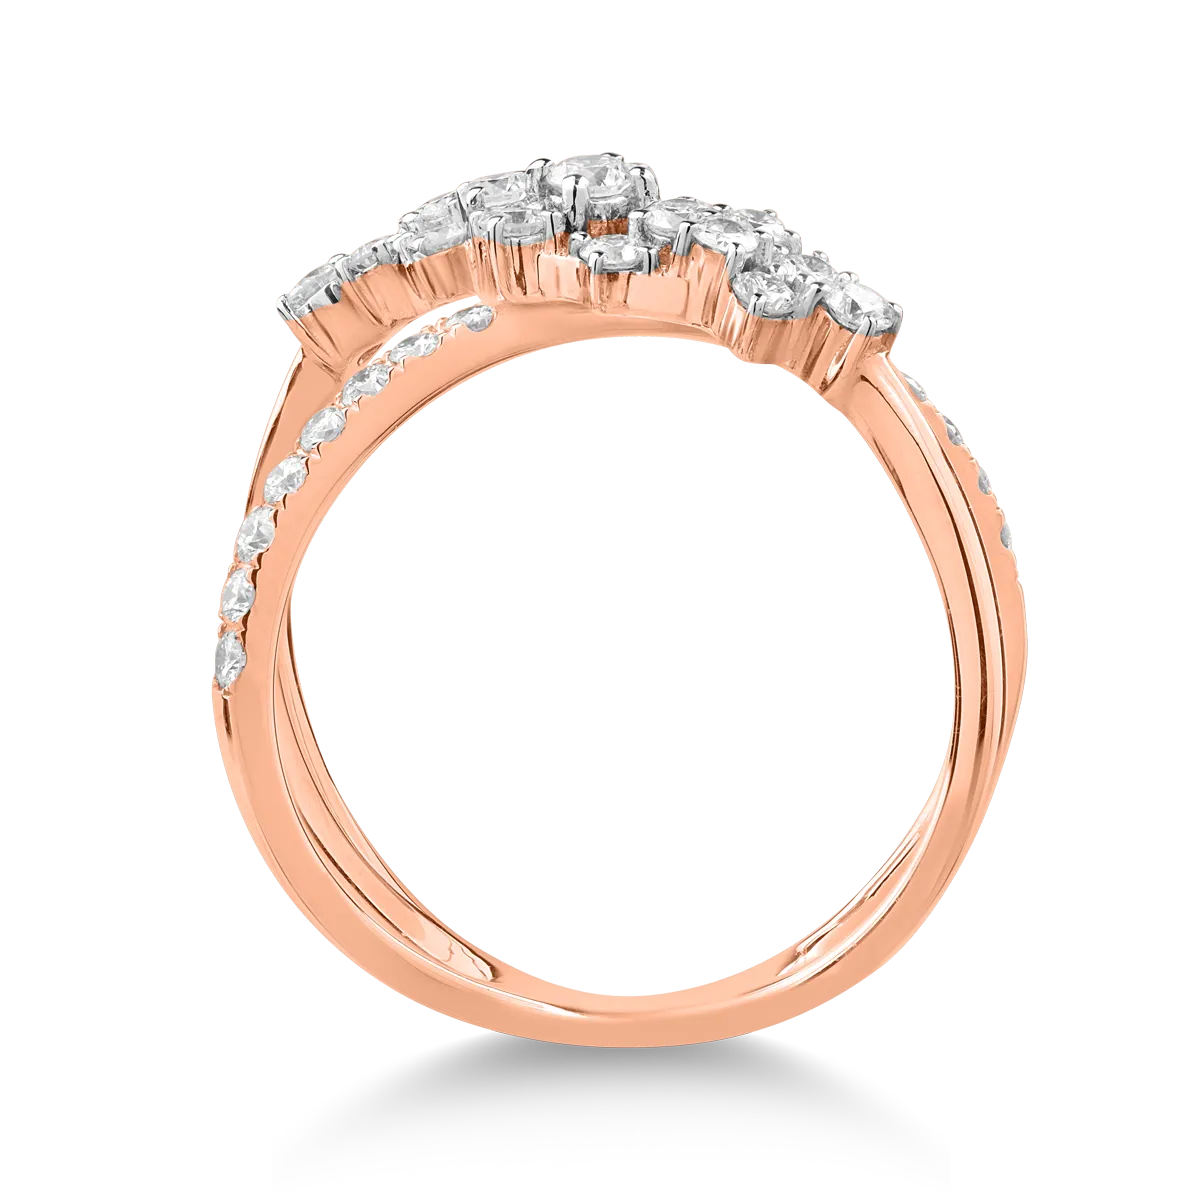 Inel din aur roz de 18K cu diamante de 0.68ct